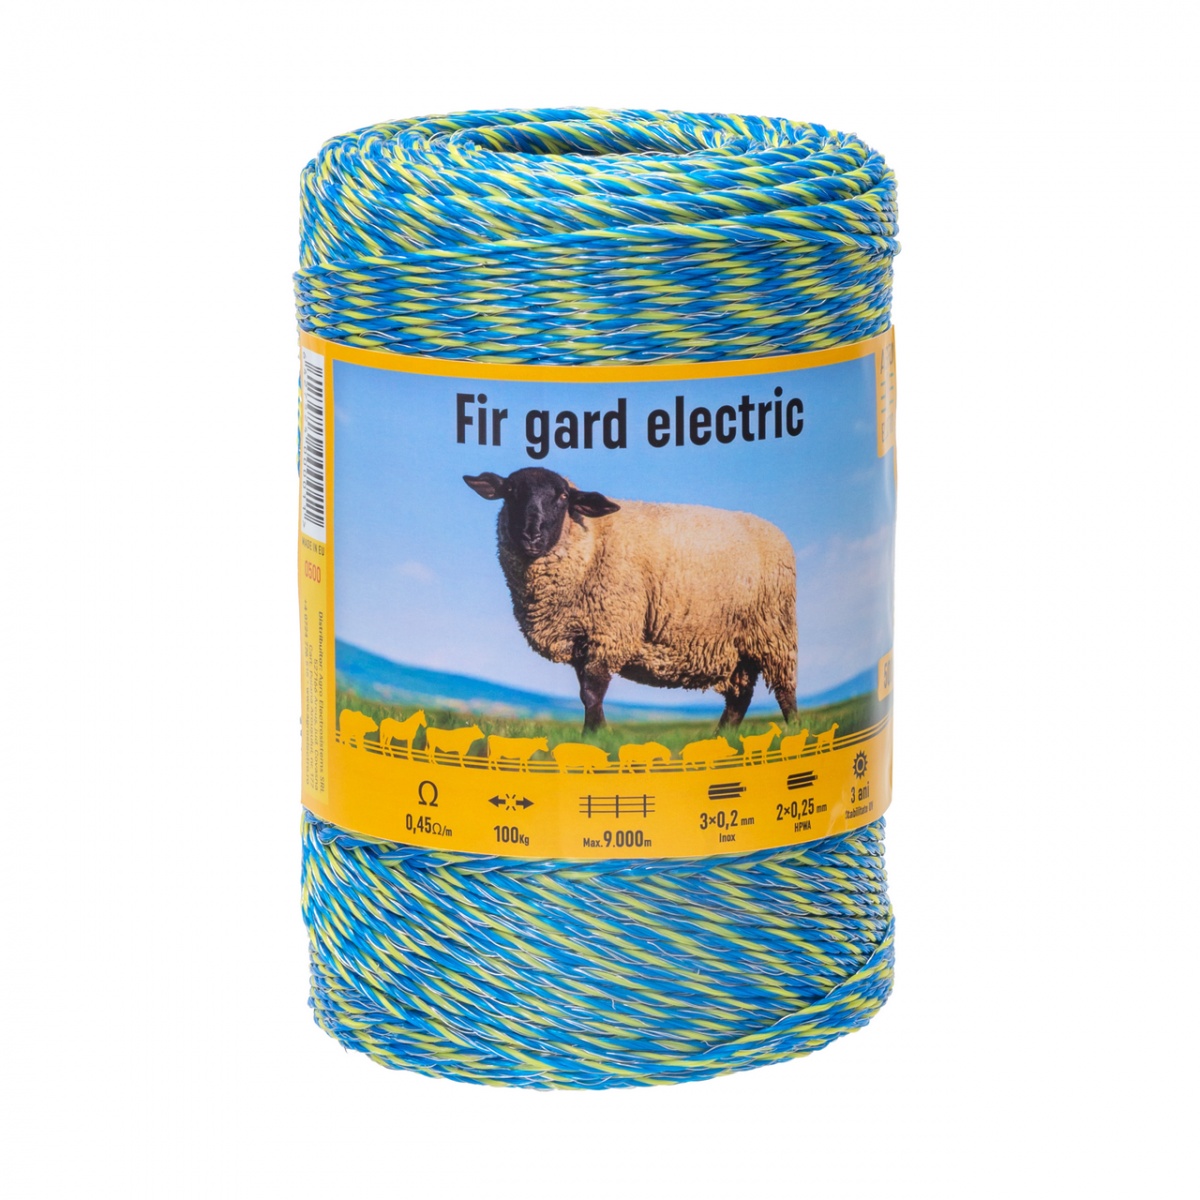 Fir gard electric - 500 m - 100 kg - 0,45 Ω/m